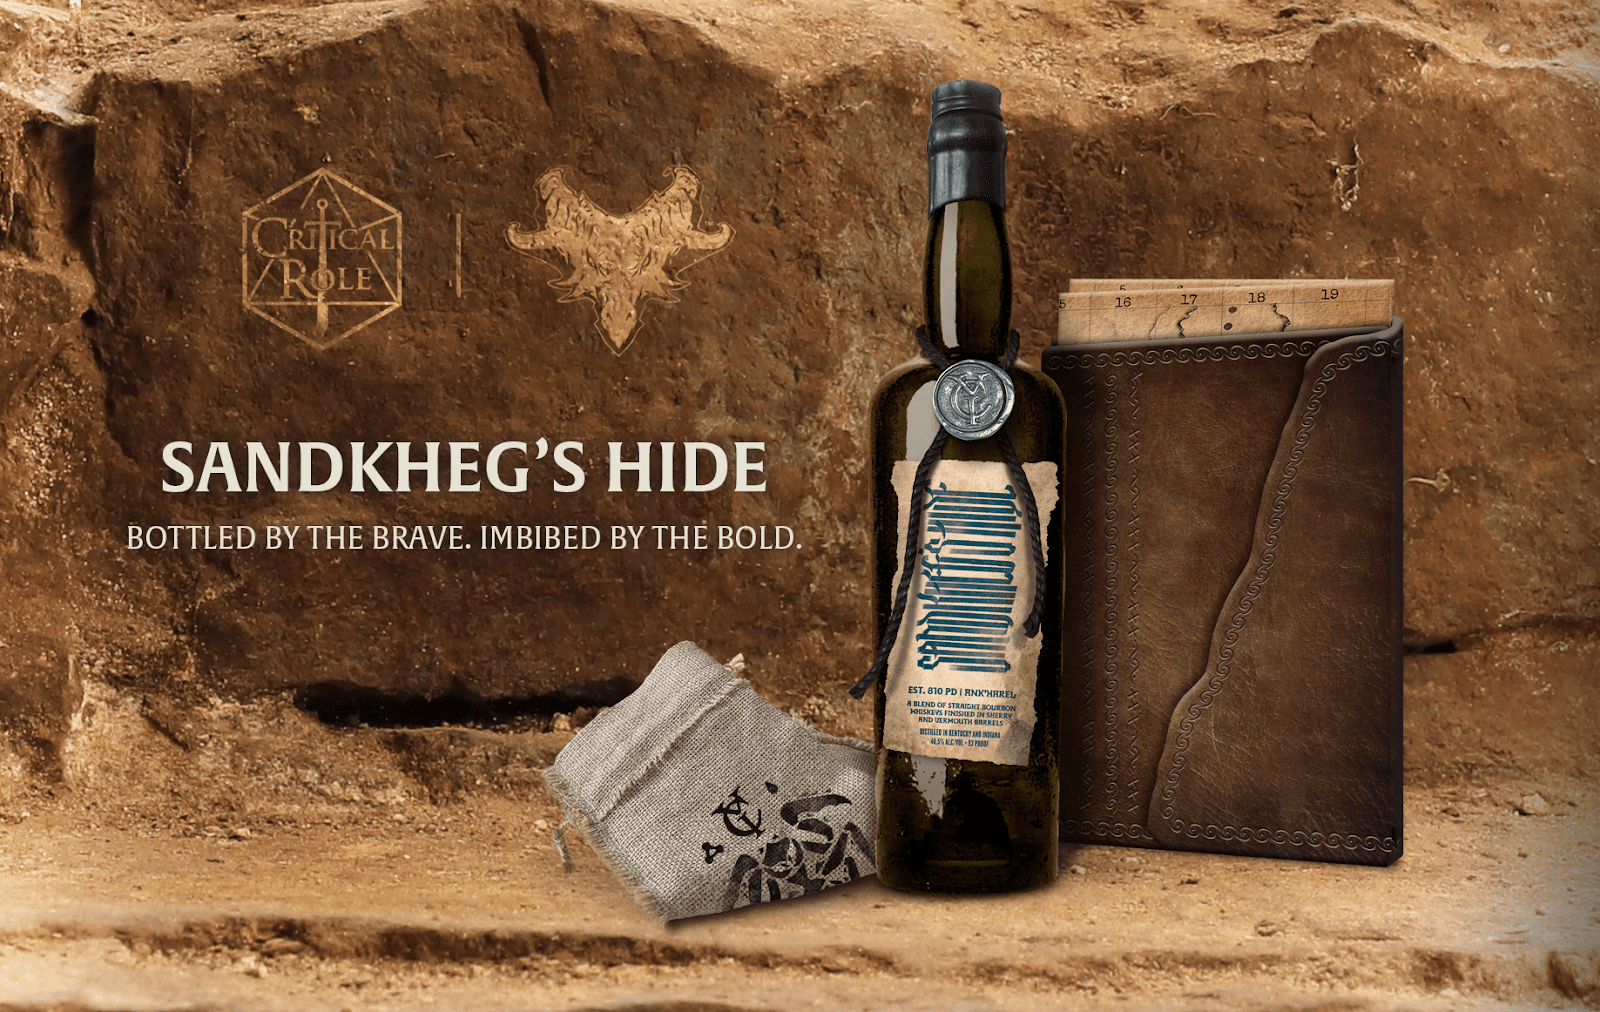 Critical Role Sandkheg's Hide bottle